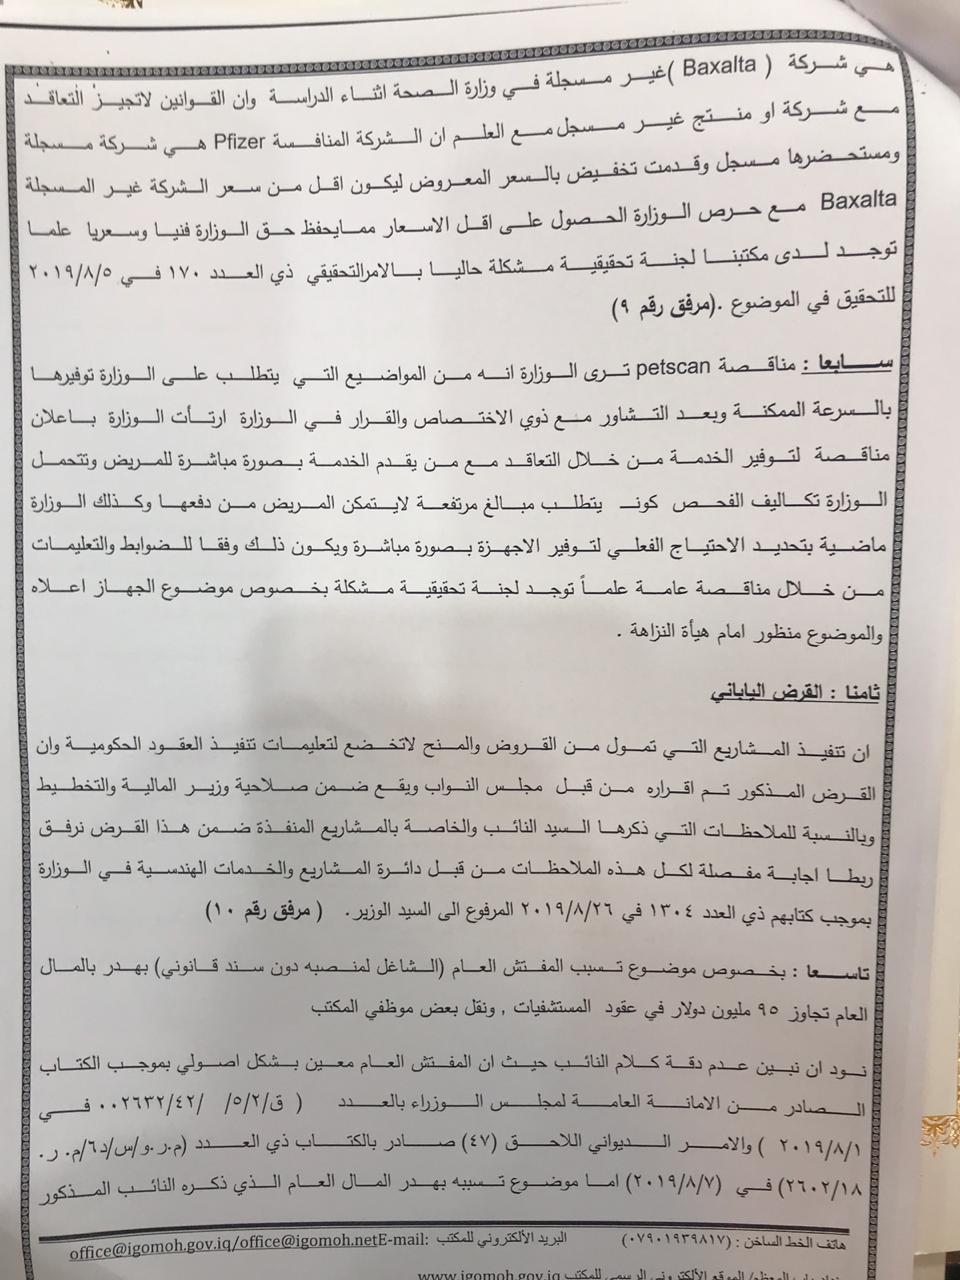  نص رد مفتش وزارة الصحة على تصريحات النائب جواد الموسوي